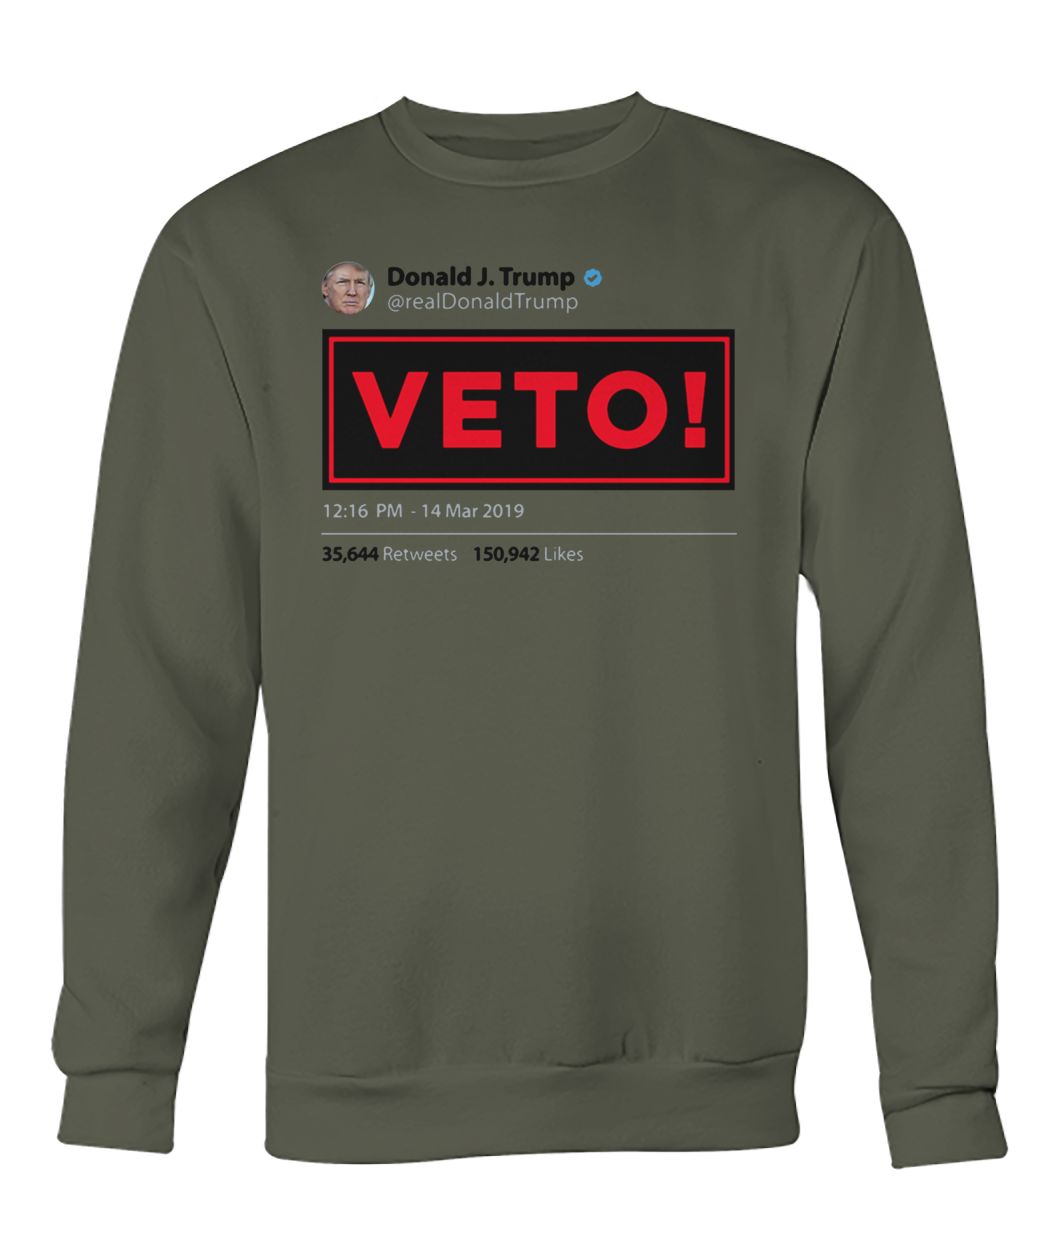 The tweet from donald j trump realdonaldtrump veto crew neck sweatshirt